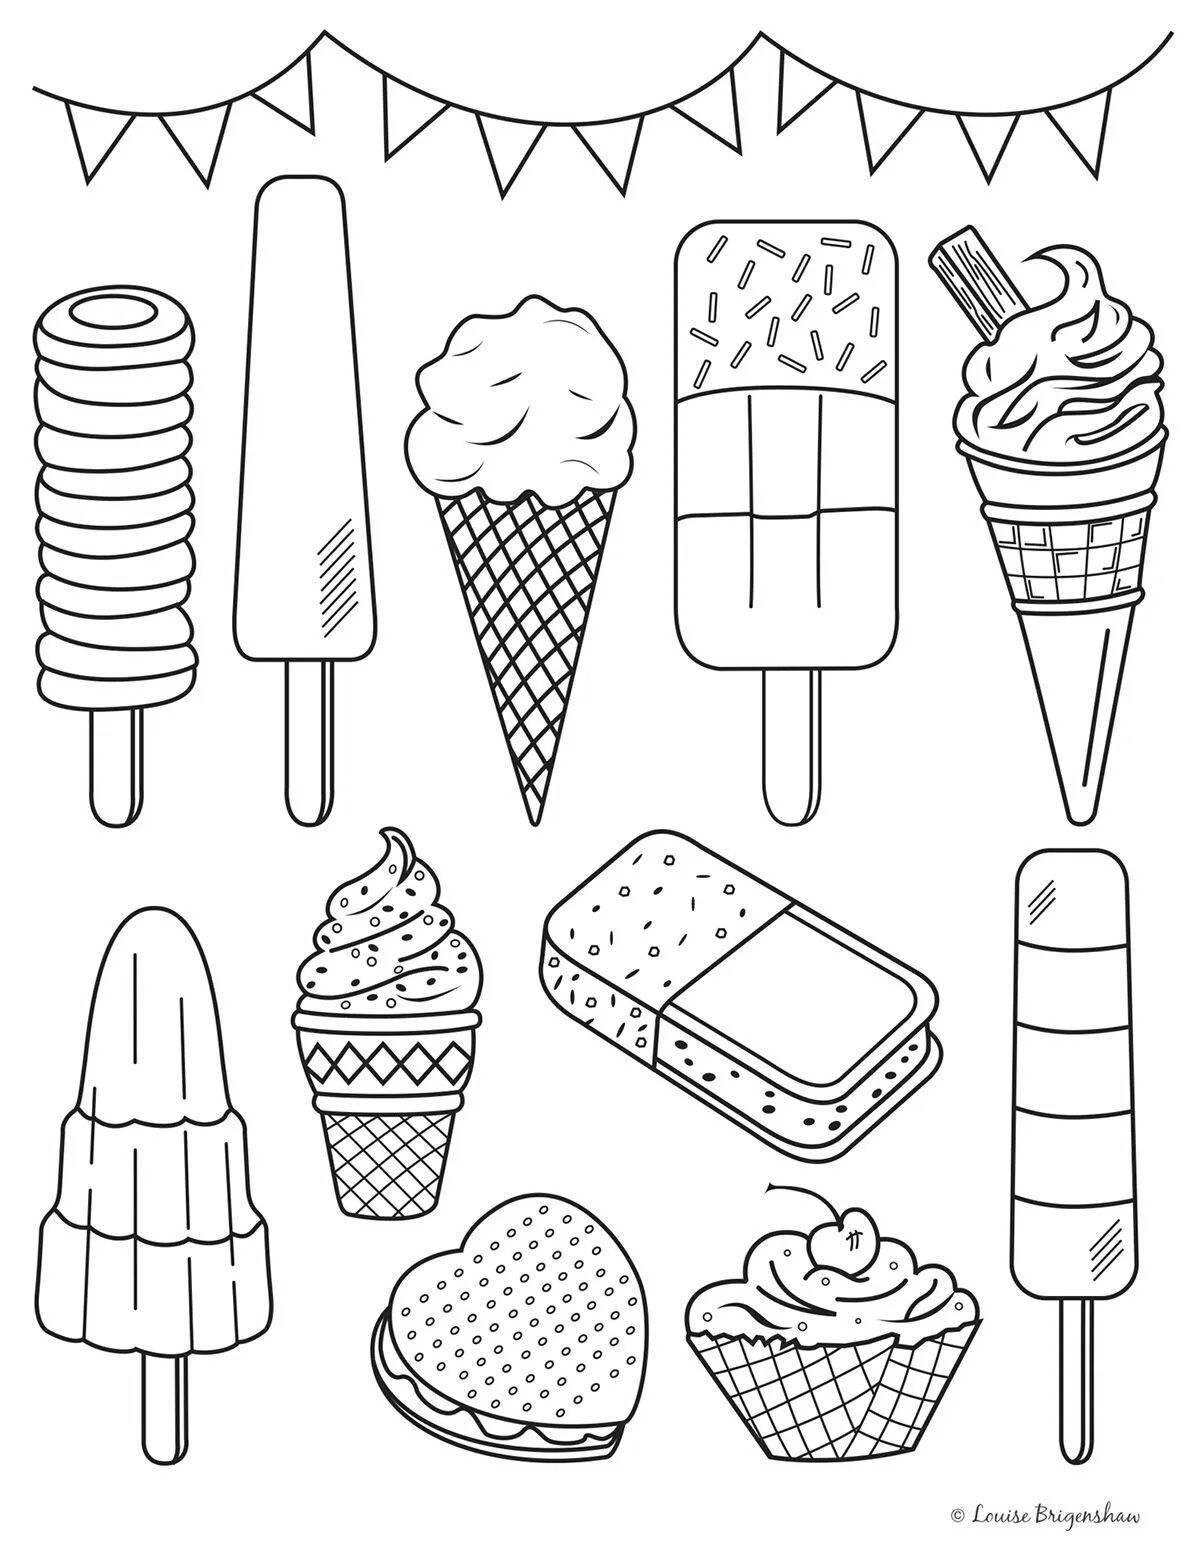 Увлекательная раскраска «мороженое» для детей 4-5 лет